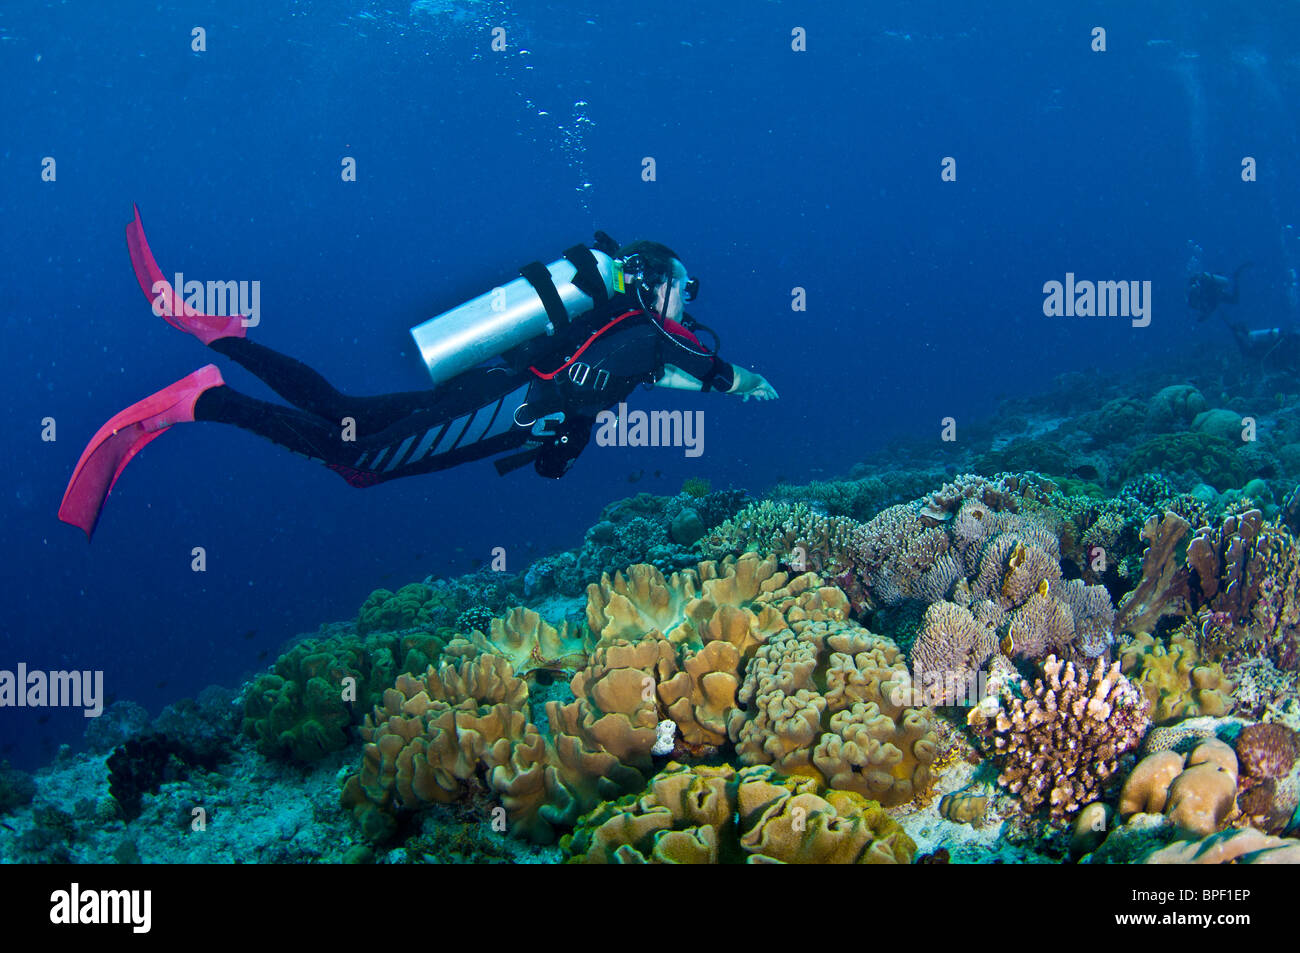 Imágenes submarinas en la Región Central de Indonesia Foto de stock